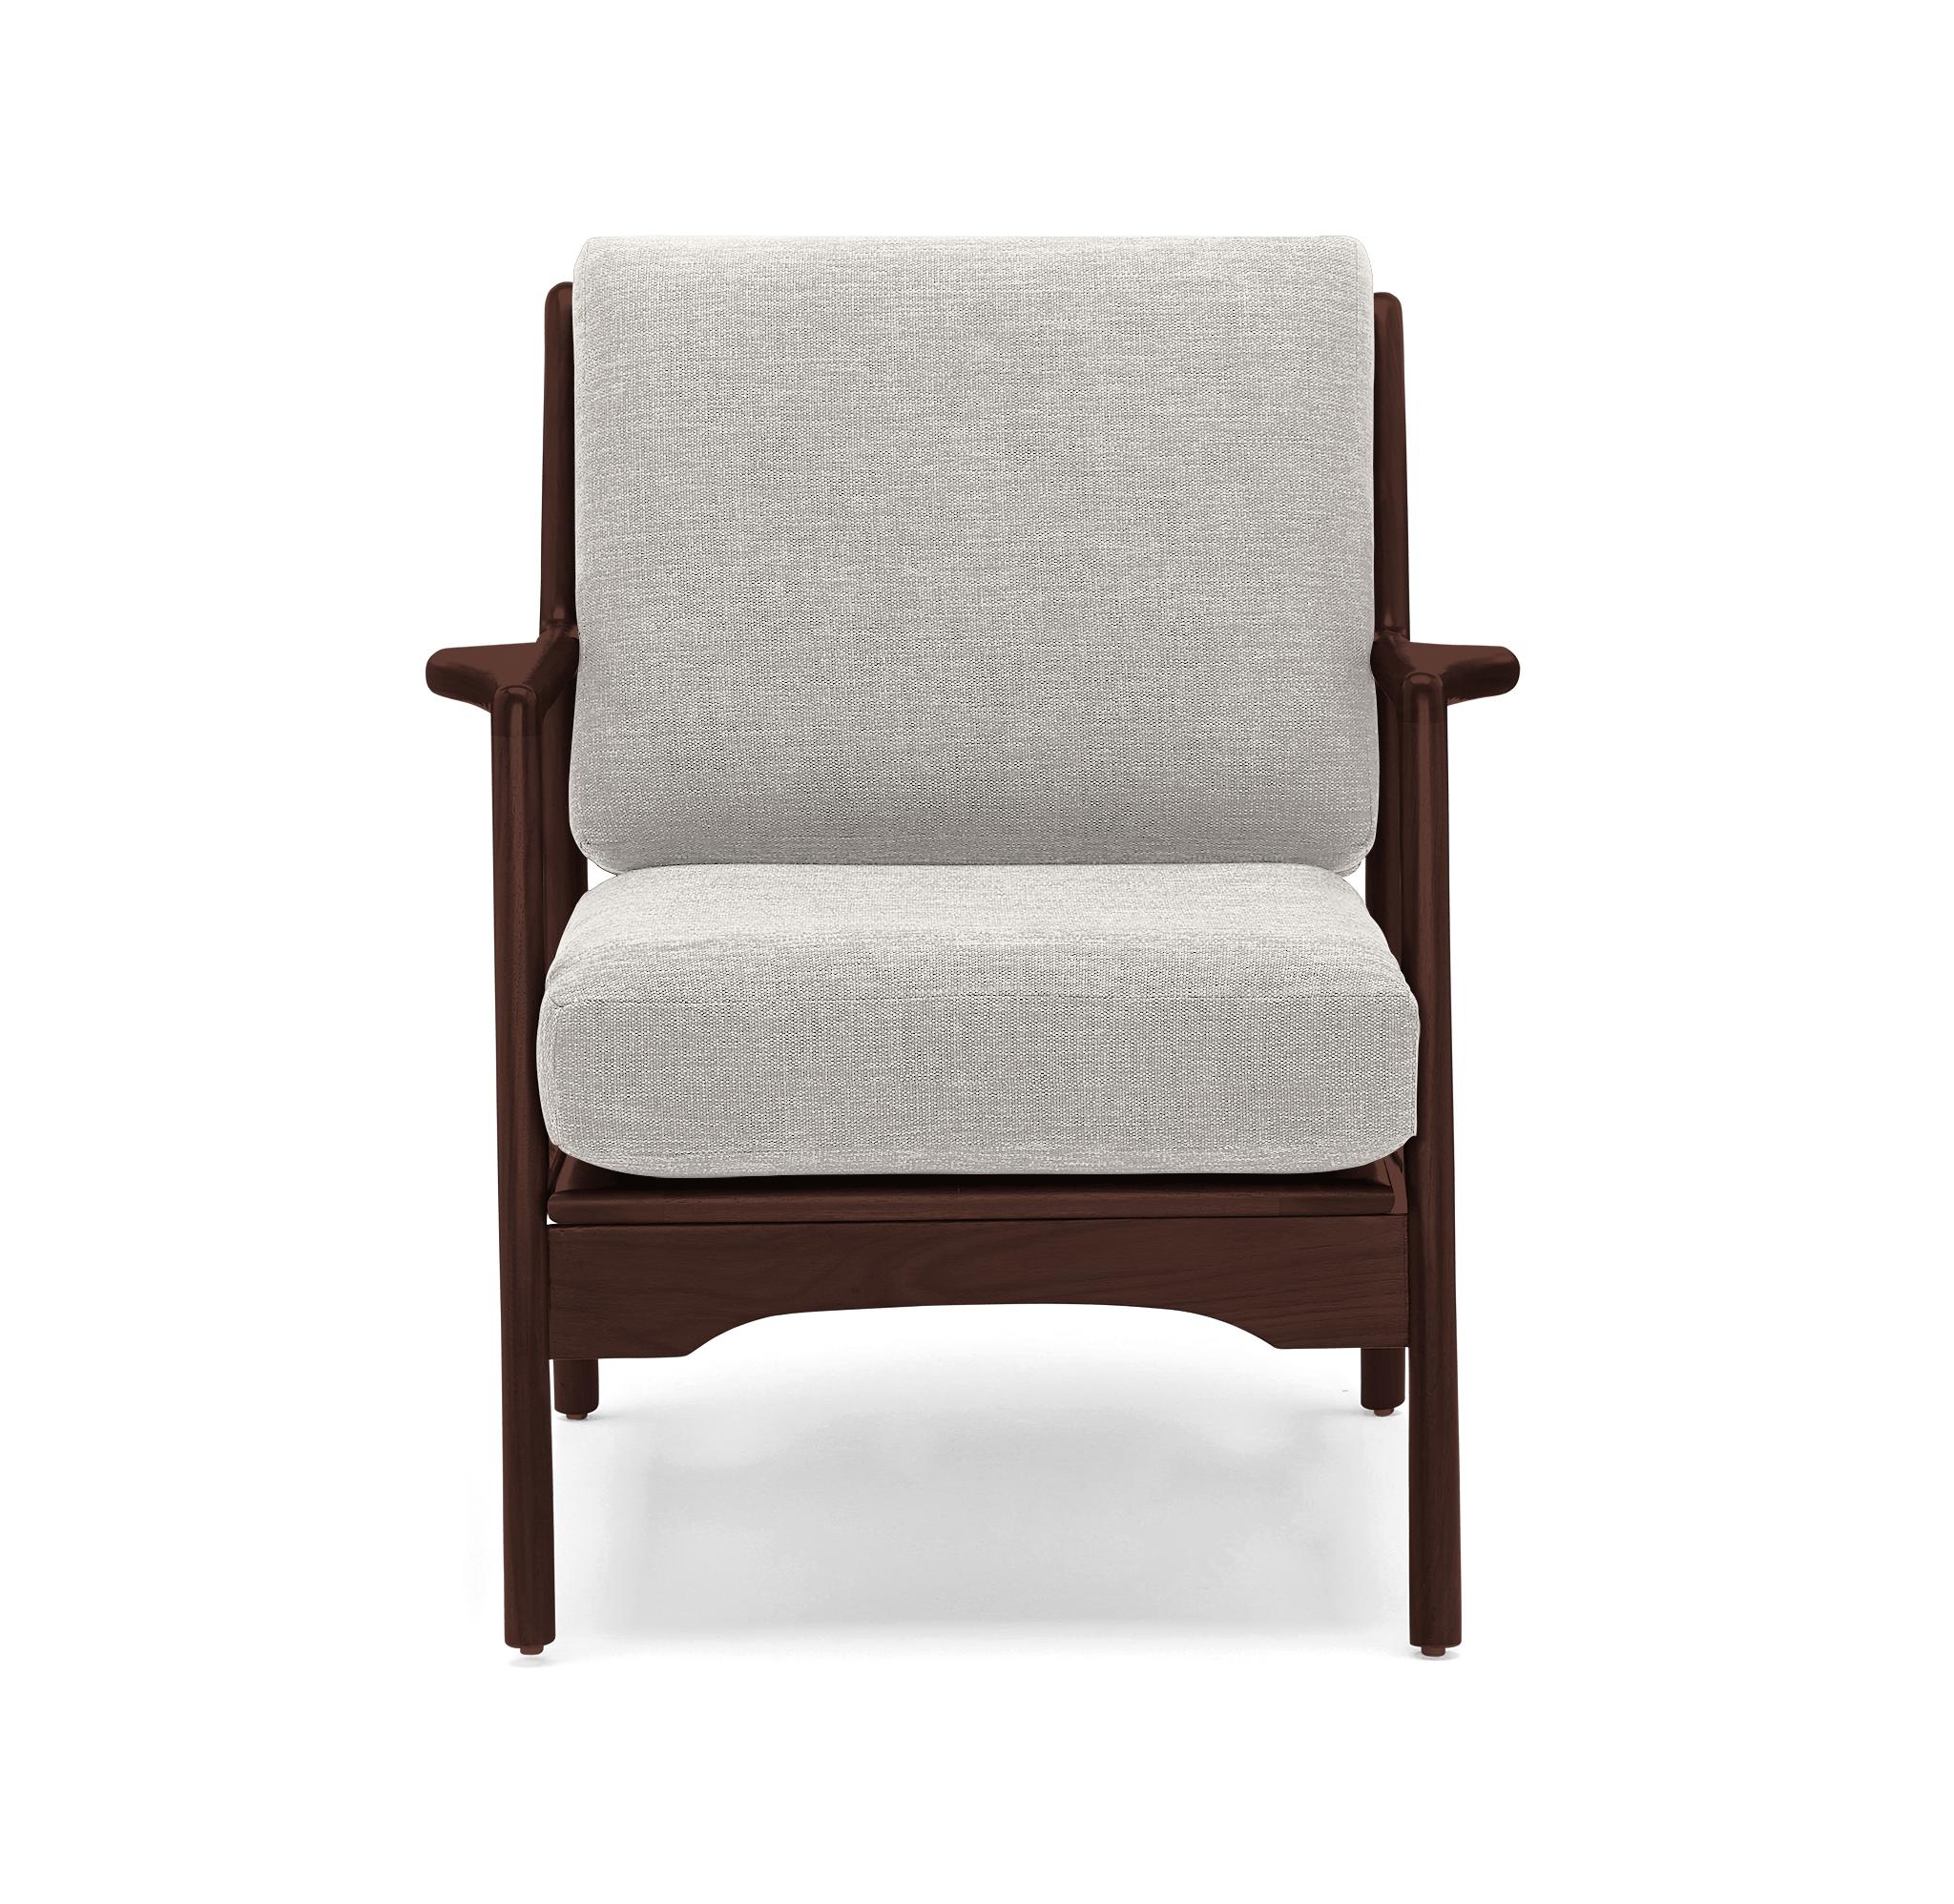 Beige/White Collins Mid Century Modern Chair - Merit Dove - Walnut - Image 1